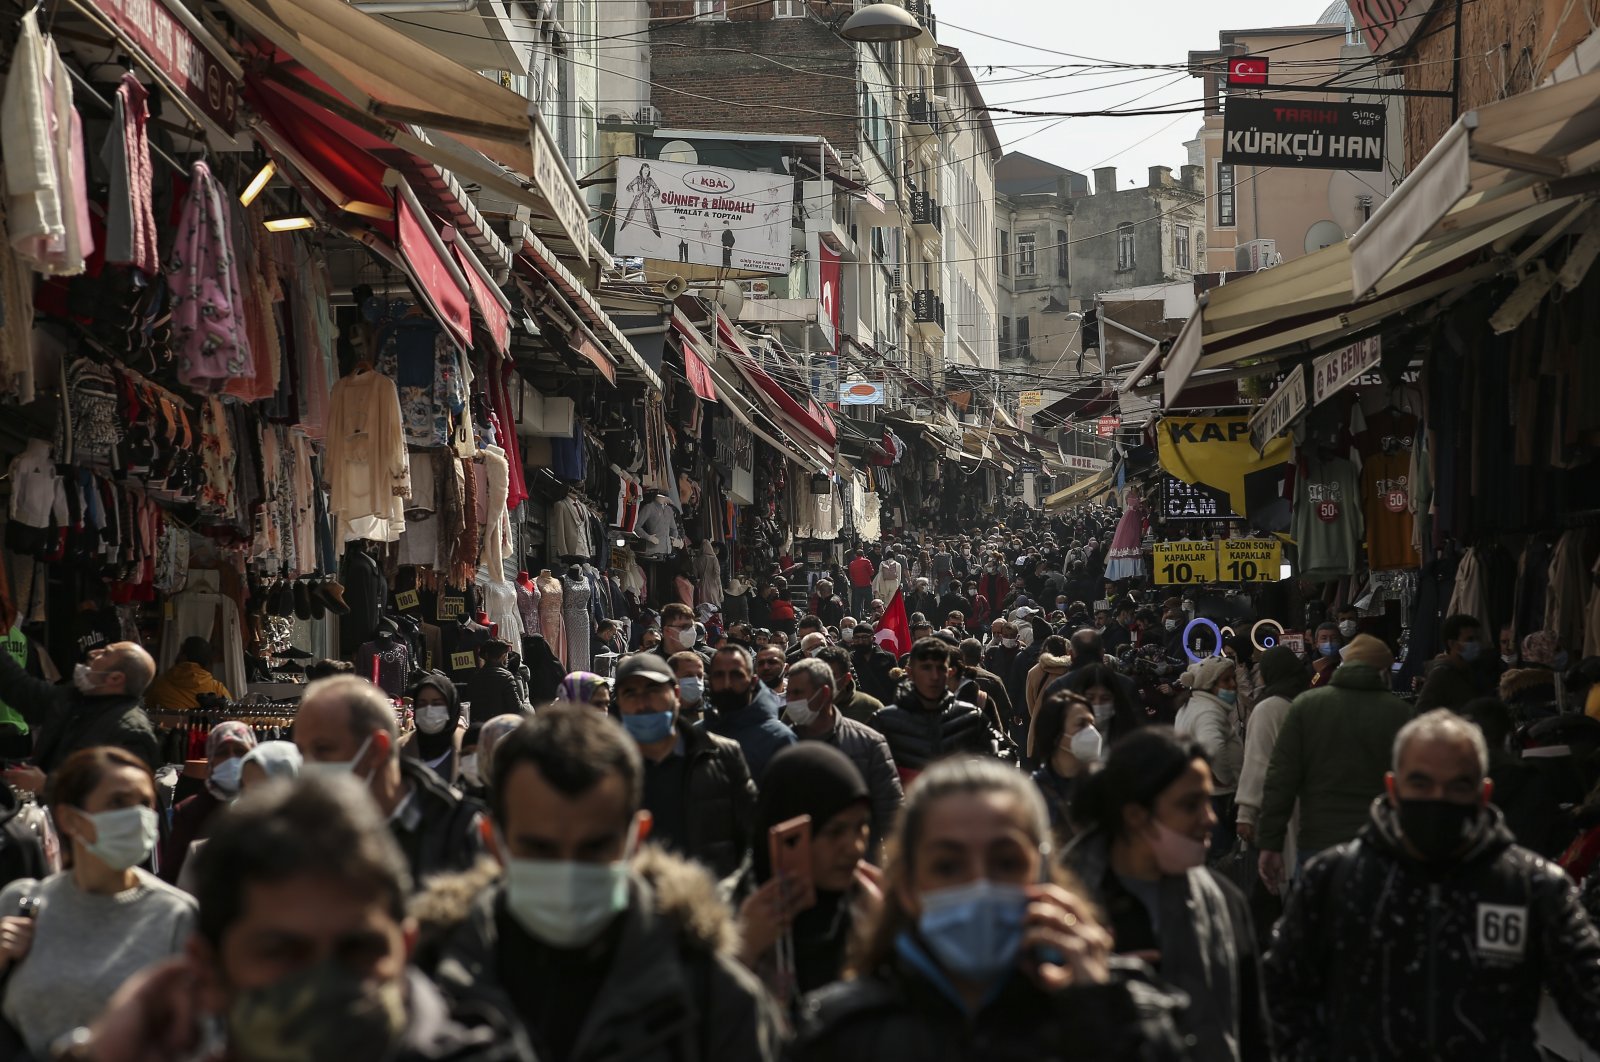 People walk in an open market in Istanbul, Turkey, March 22, 2021. (AP Photo)